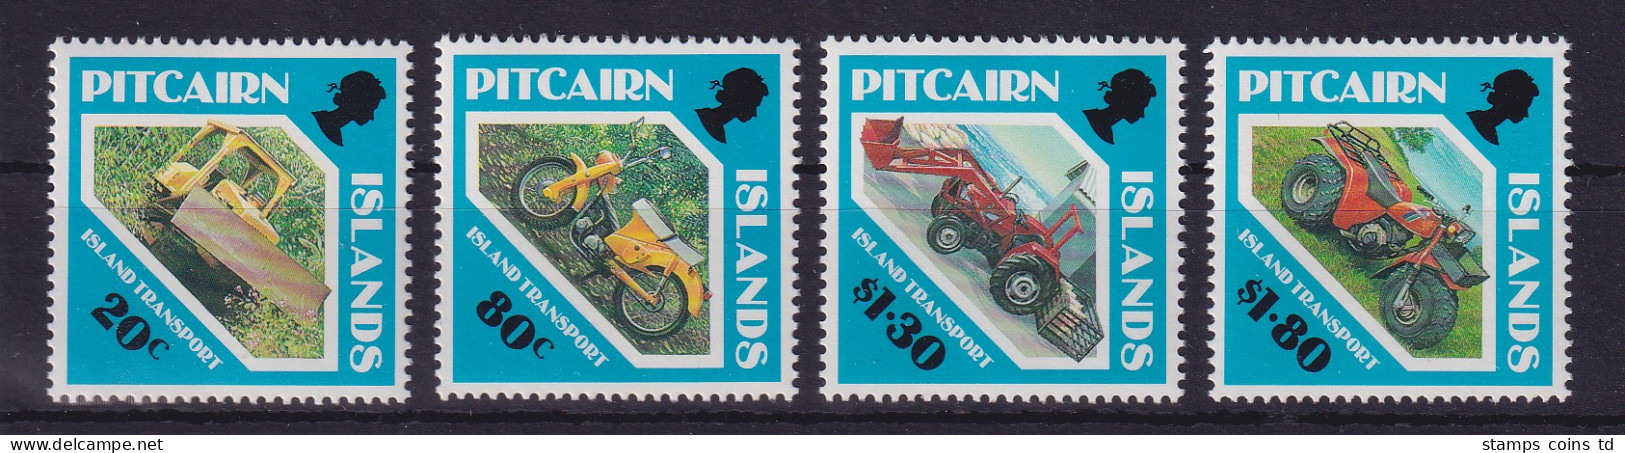 Pitcairn Islands 1991 Transport-Fahrzeuge Mi.-Nr. 383-386 Postfrisch ** - Pitcairn Islands